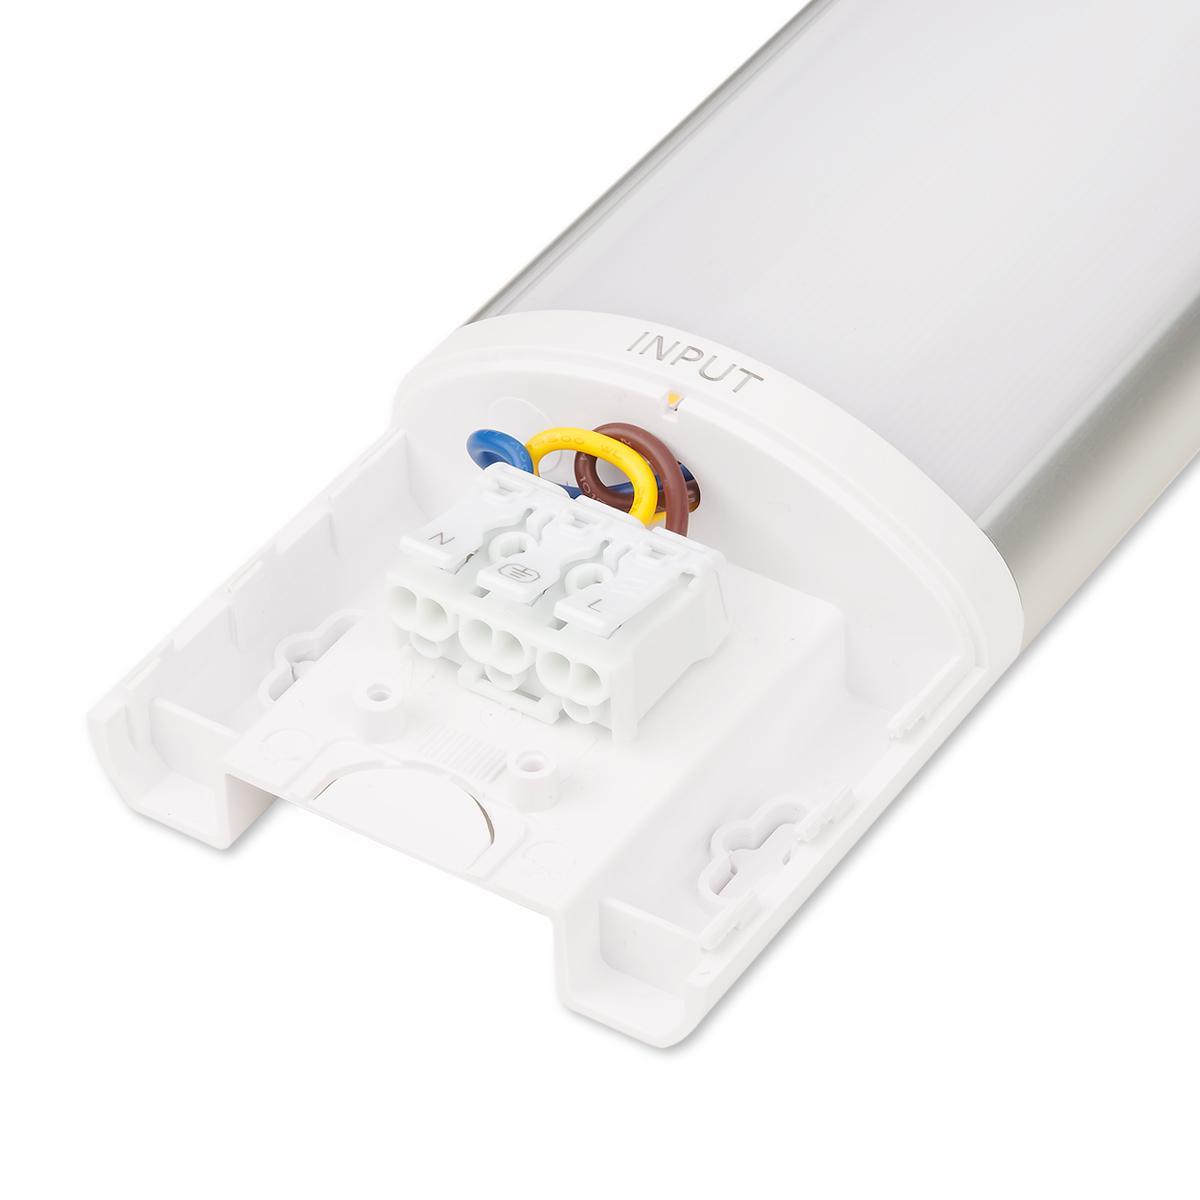 LED Lichtleiste Slim CCT 100lm/w IP20 - Ausführung: 120cm 40W